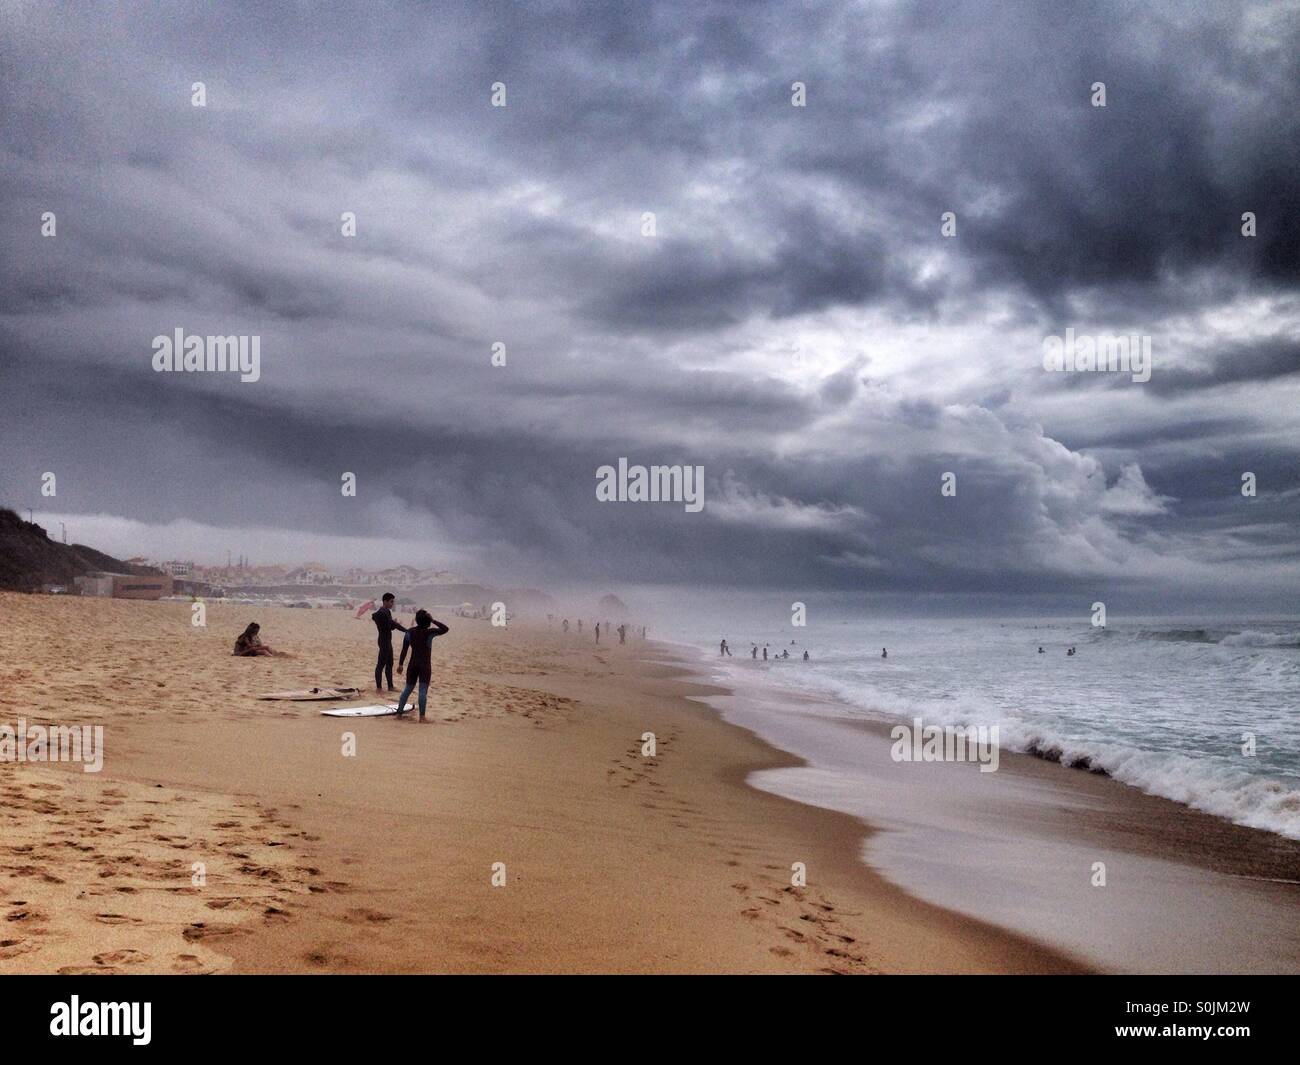 Personnes surfant sous une tempête dans l'océan Atlantique, de la côte ouest du Portugal, avec d'énormes nuages gris et sombre dans le ciel Banque D'Images